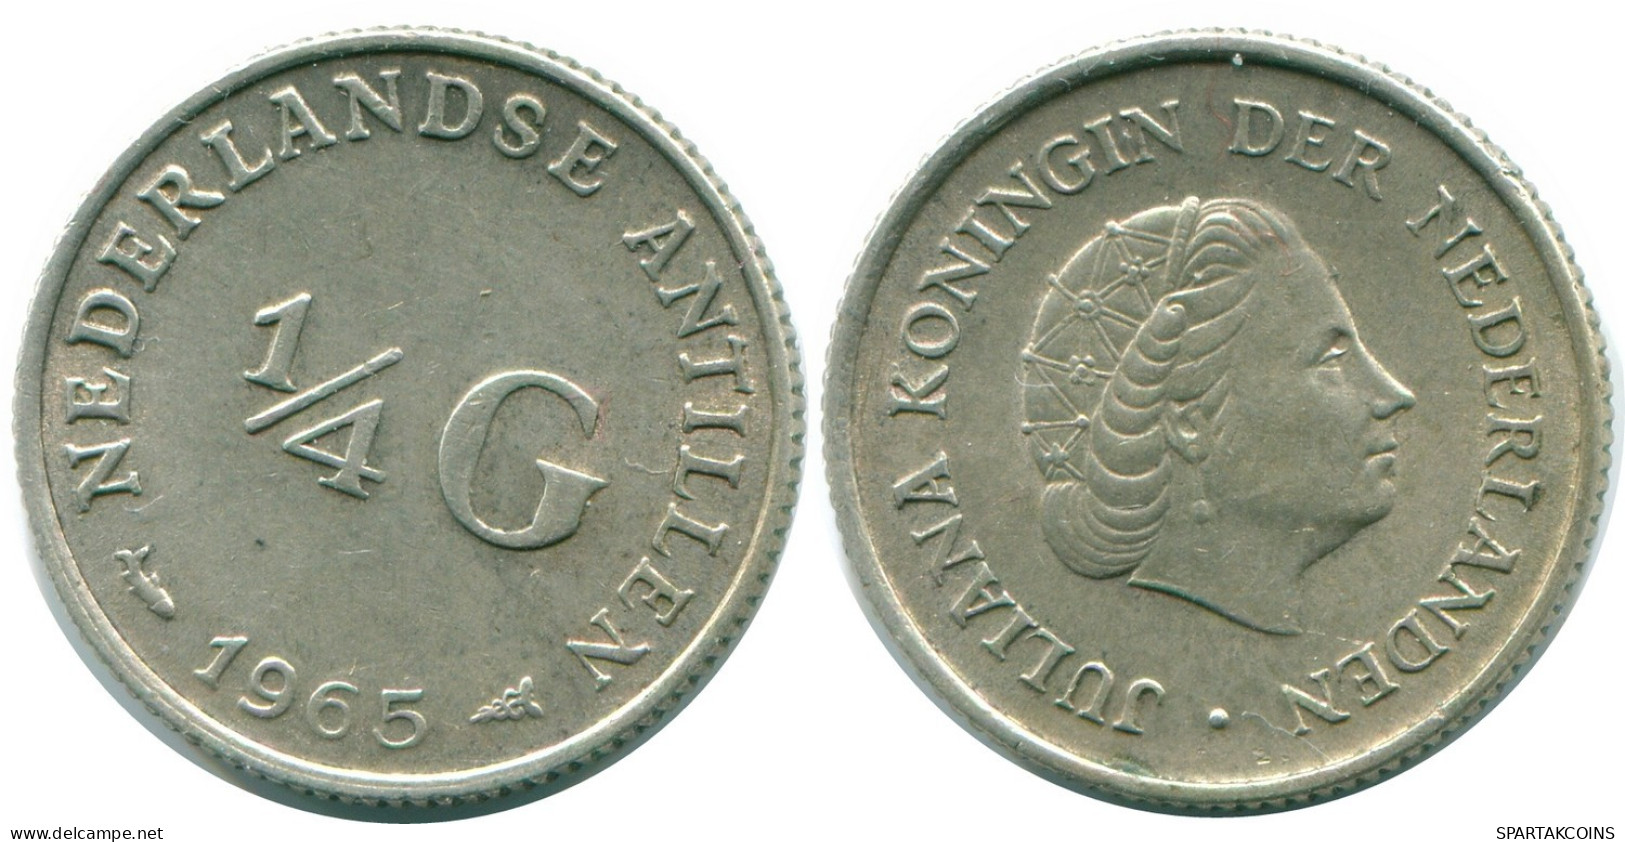 1/4 GULDEN 1965 NIEDERLÄNDISCHE ANTILLEN SILBER Koloniale Münze #NL11422.4.D.A - Niederländische Antillen